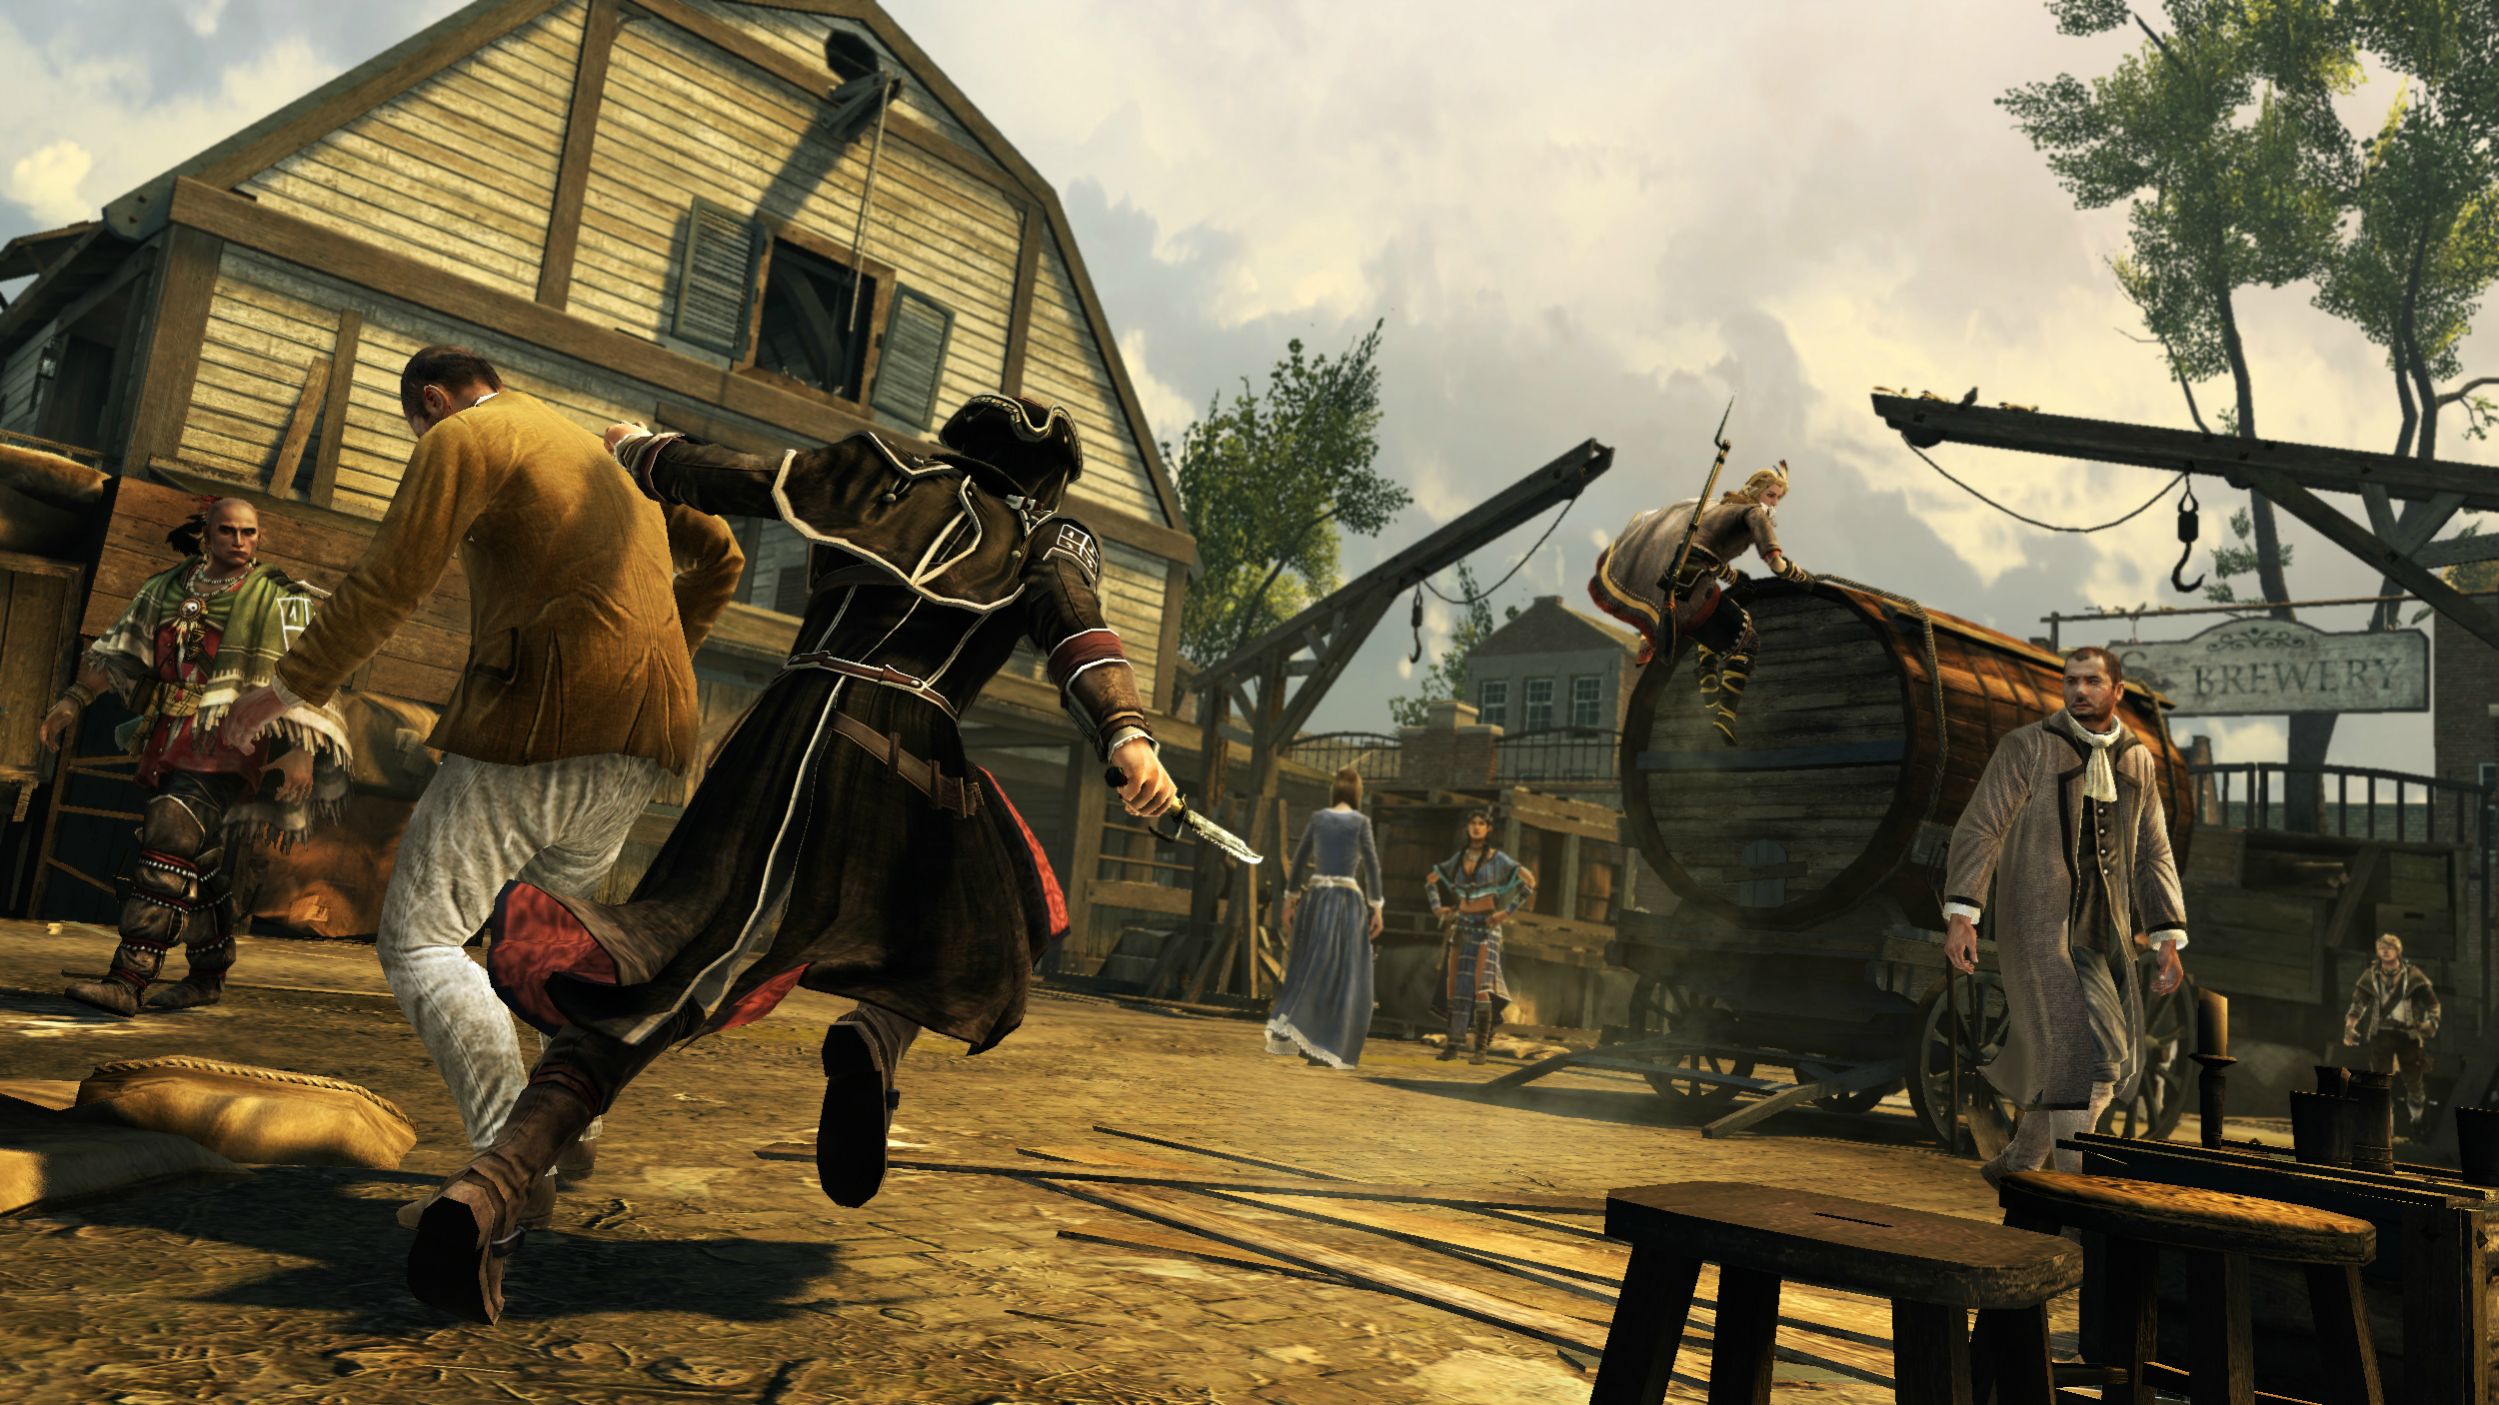 То делать играть в 3. Ассасин Крид 3. Assassin's Creed 3 мультиплеер. Assassin's Creed 3 screenshots. Скриншоты игры ассасин Крид 3.